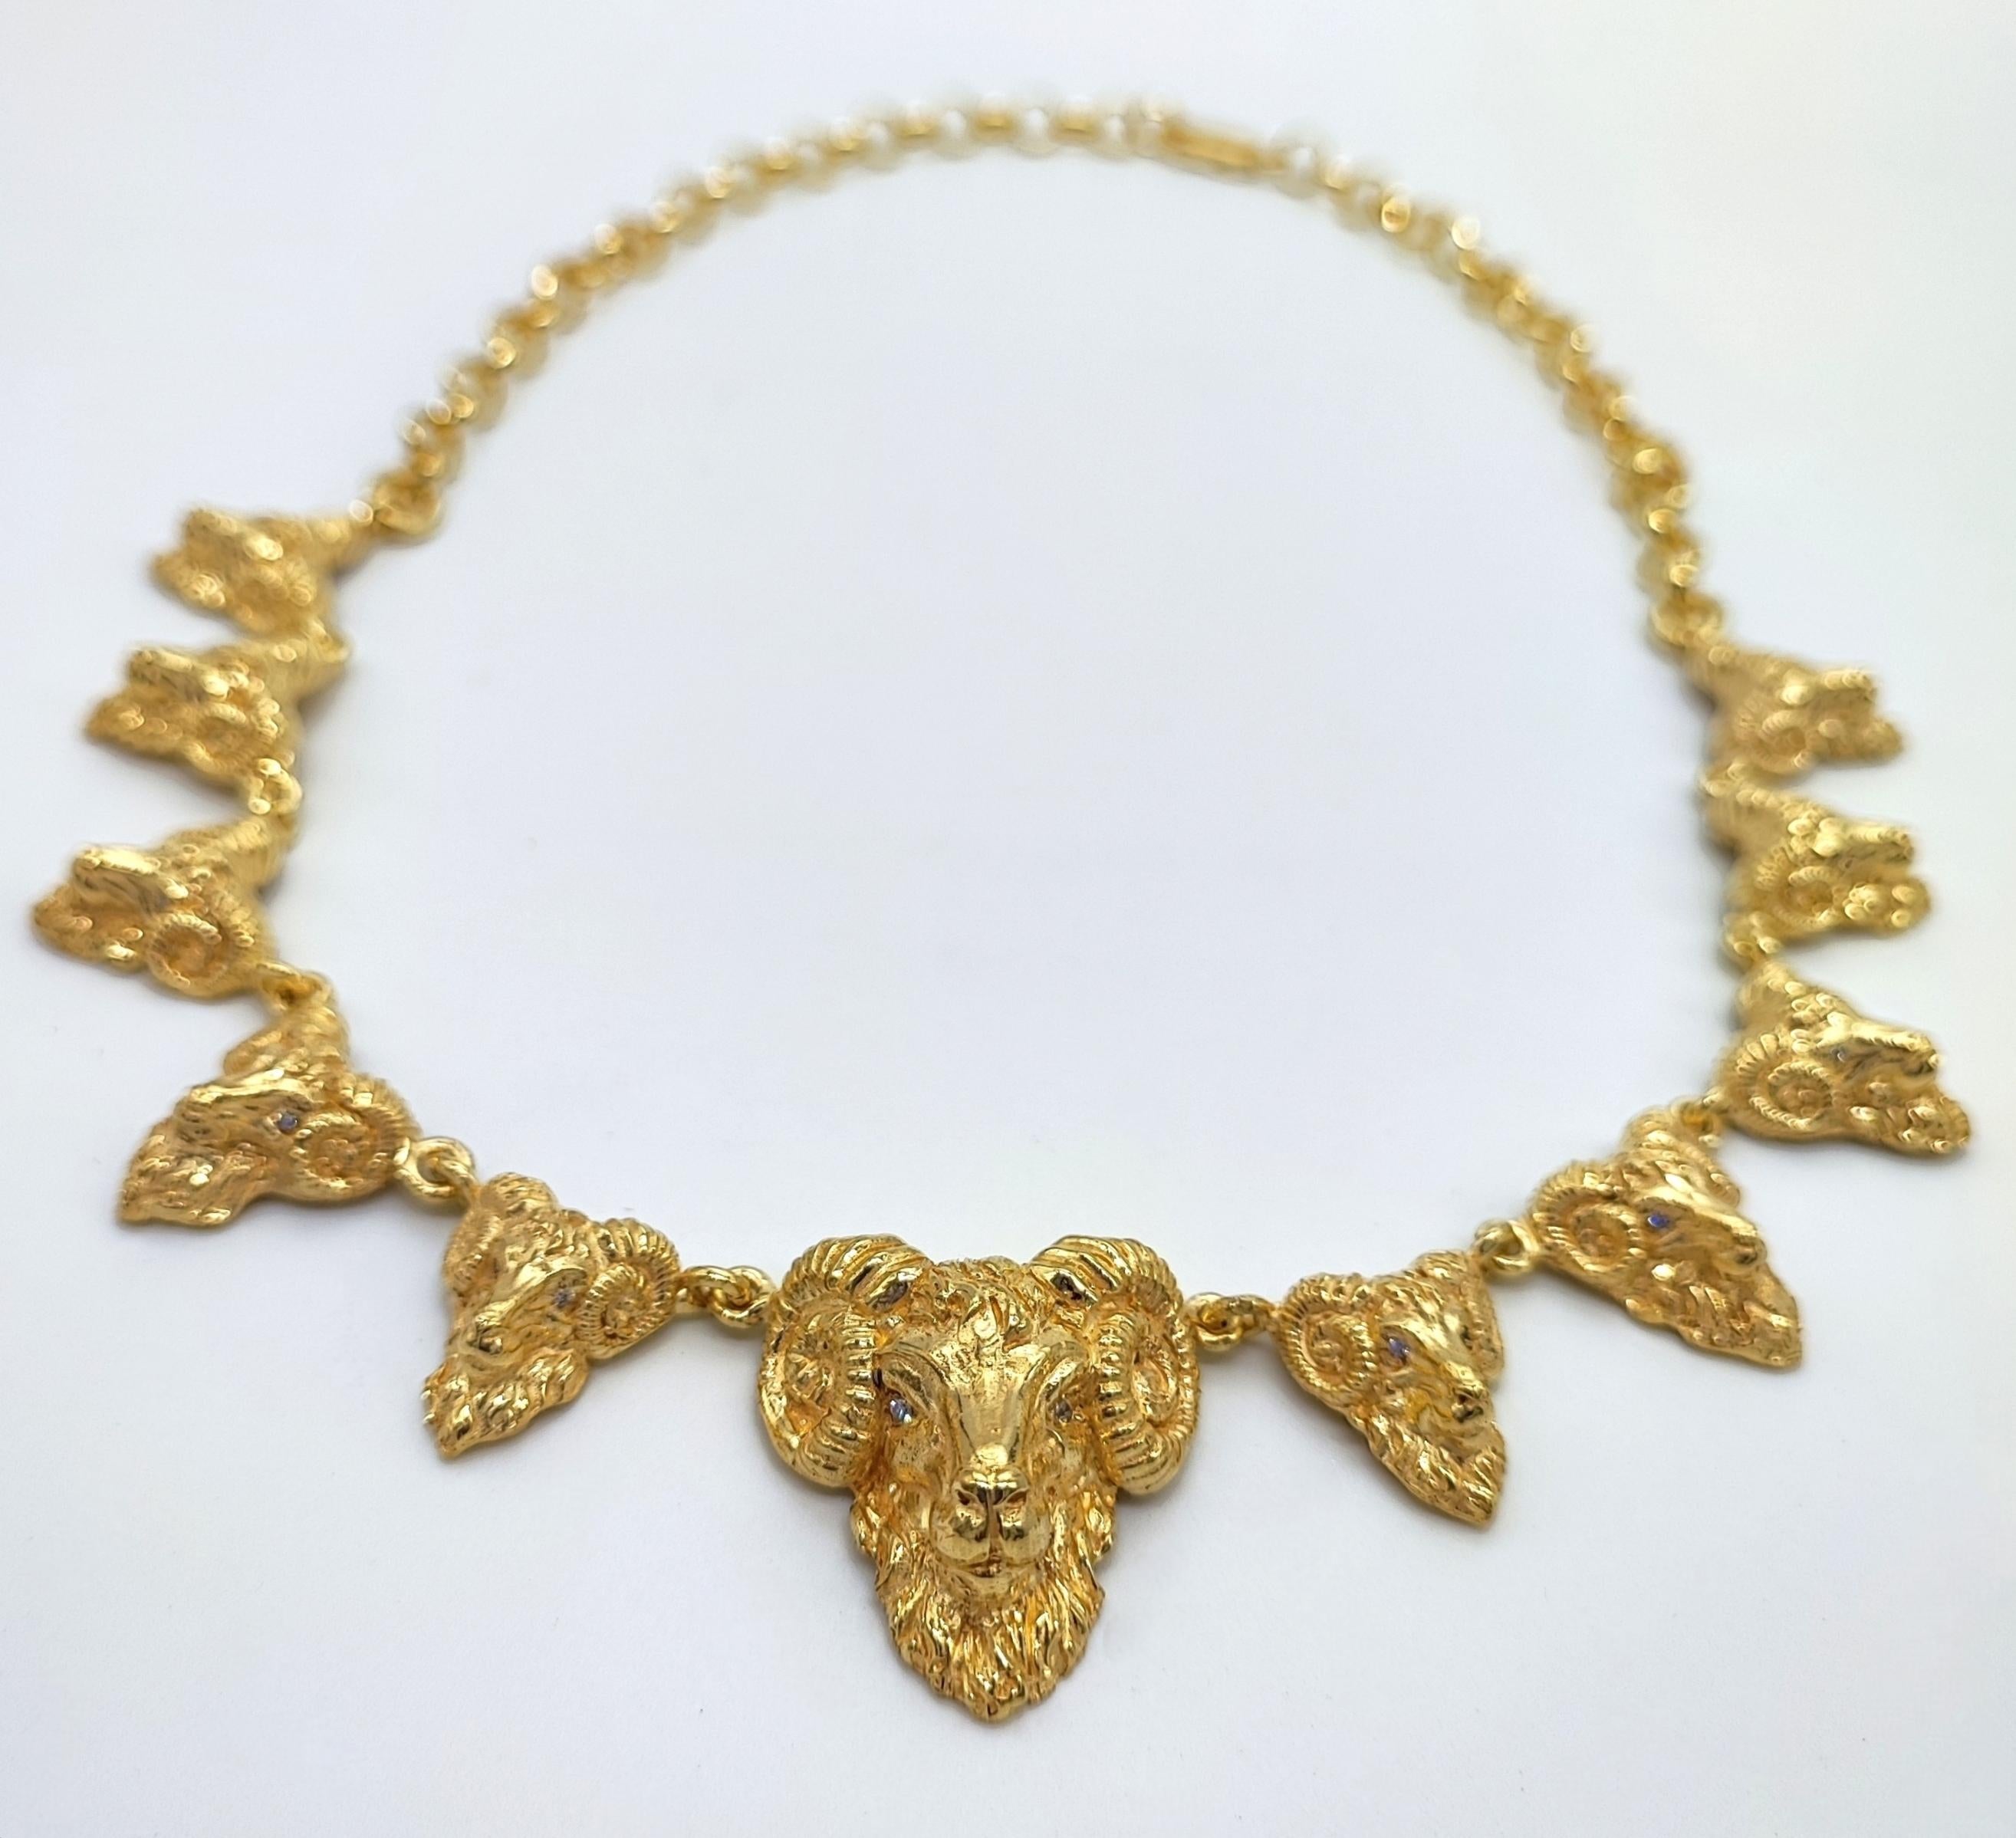 Serie Animalia
Wichtige Halskette aus massivem 14-karätigem Gelbgold.
Die Halskette wird von italienischen Kunsthandwerkern vollständig von Hand gefertigt. 
Die Technik ist die der Mikroskulptur im Wachsausschmelzverfahren. 
Die Augen des Widders